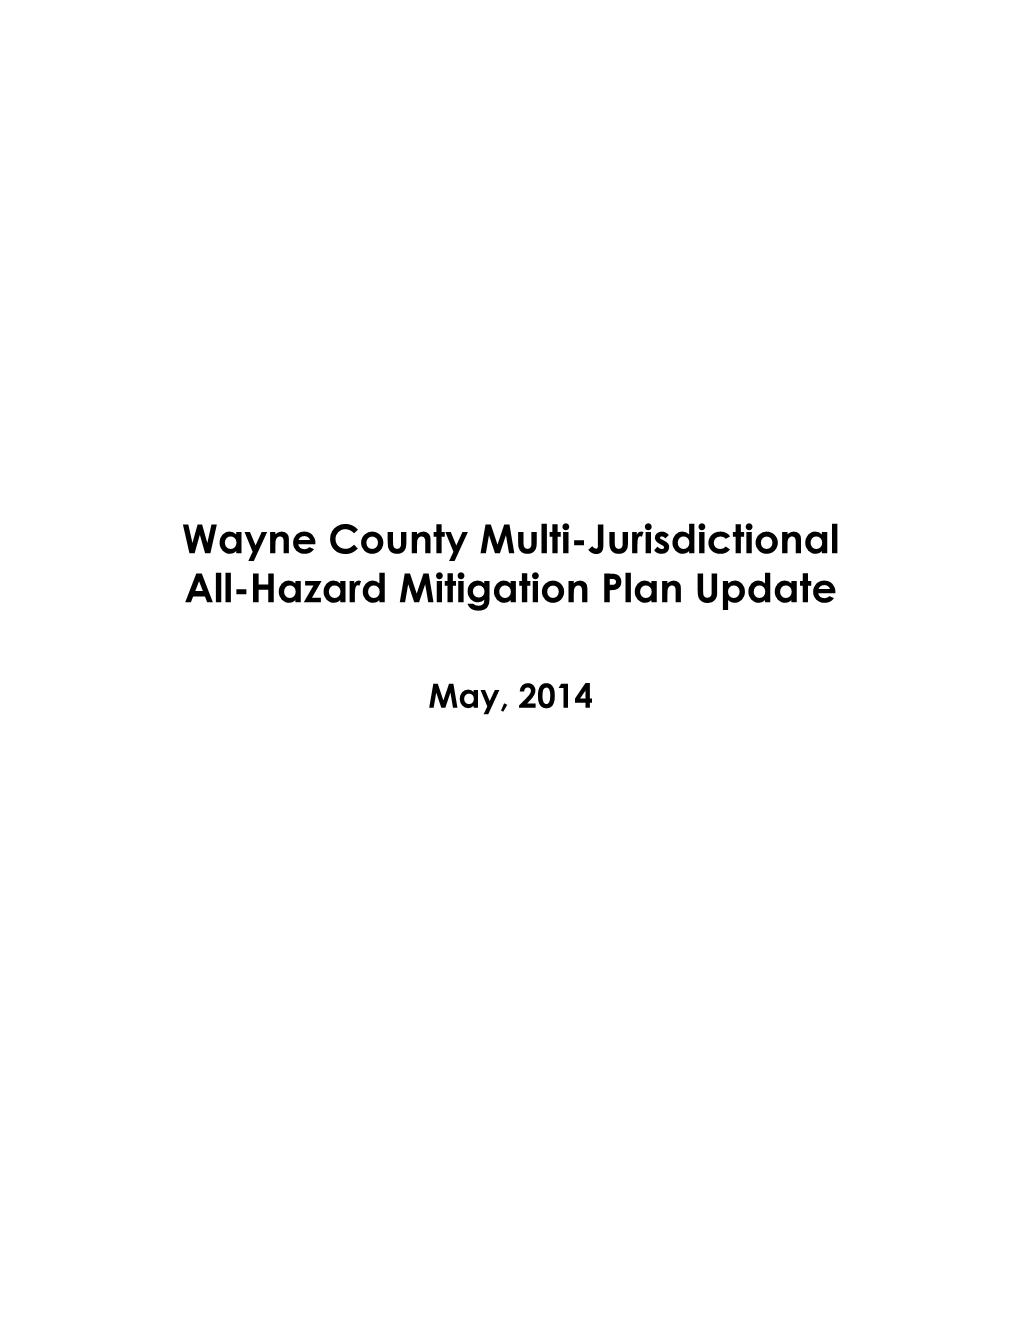 Wayne County All Hazard Mitigation Plan Update